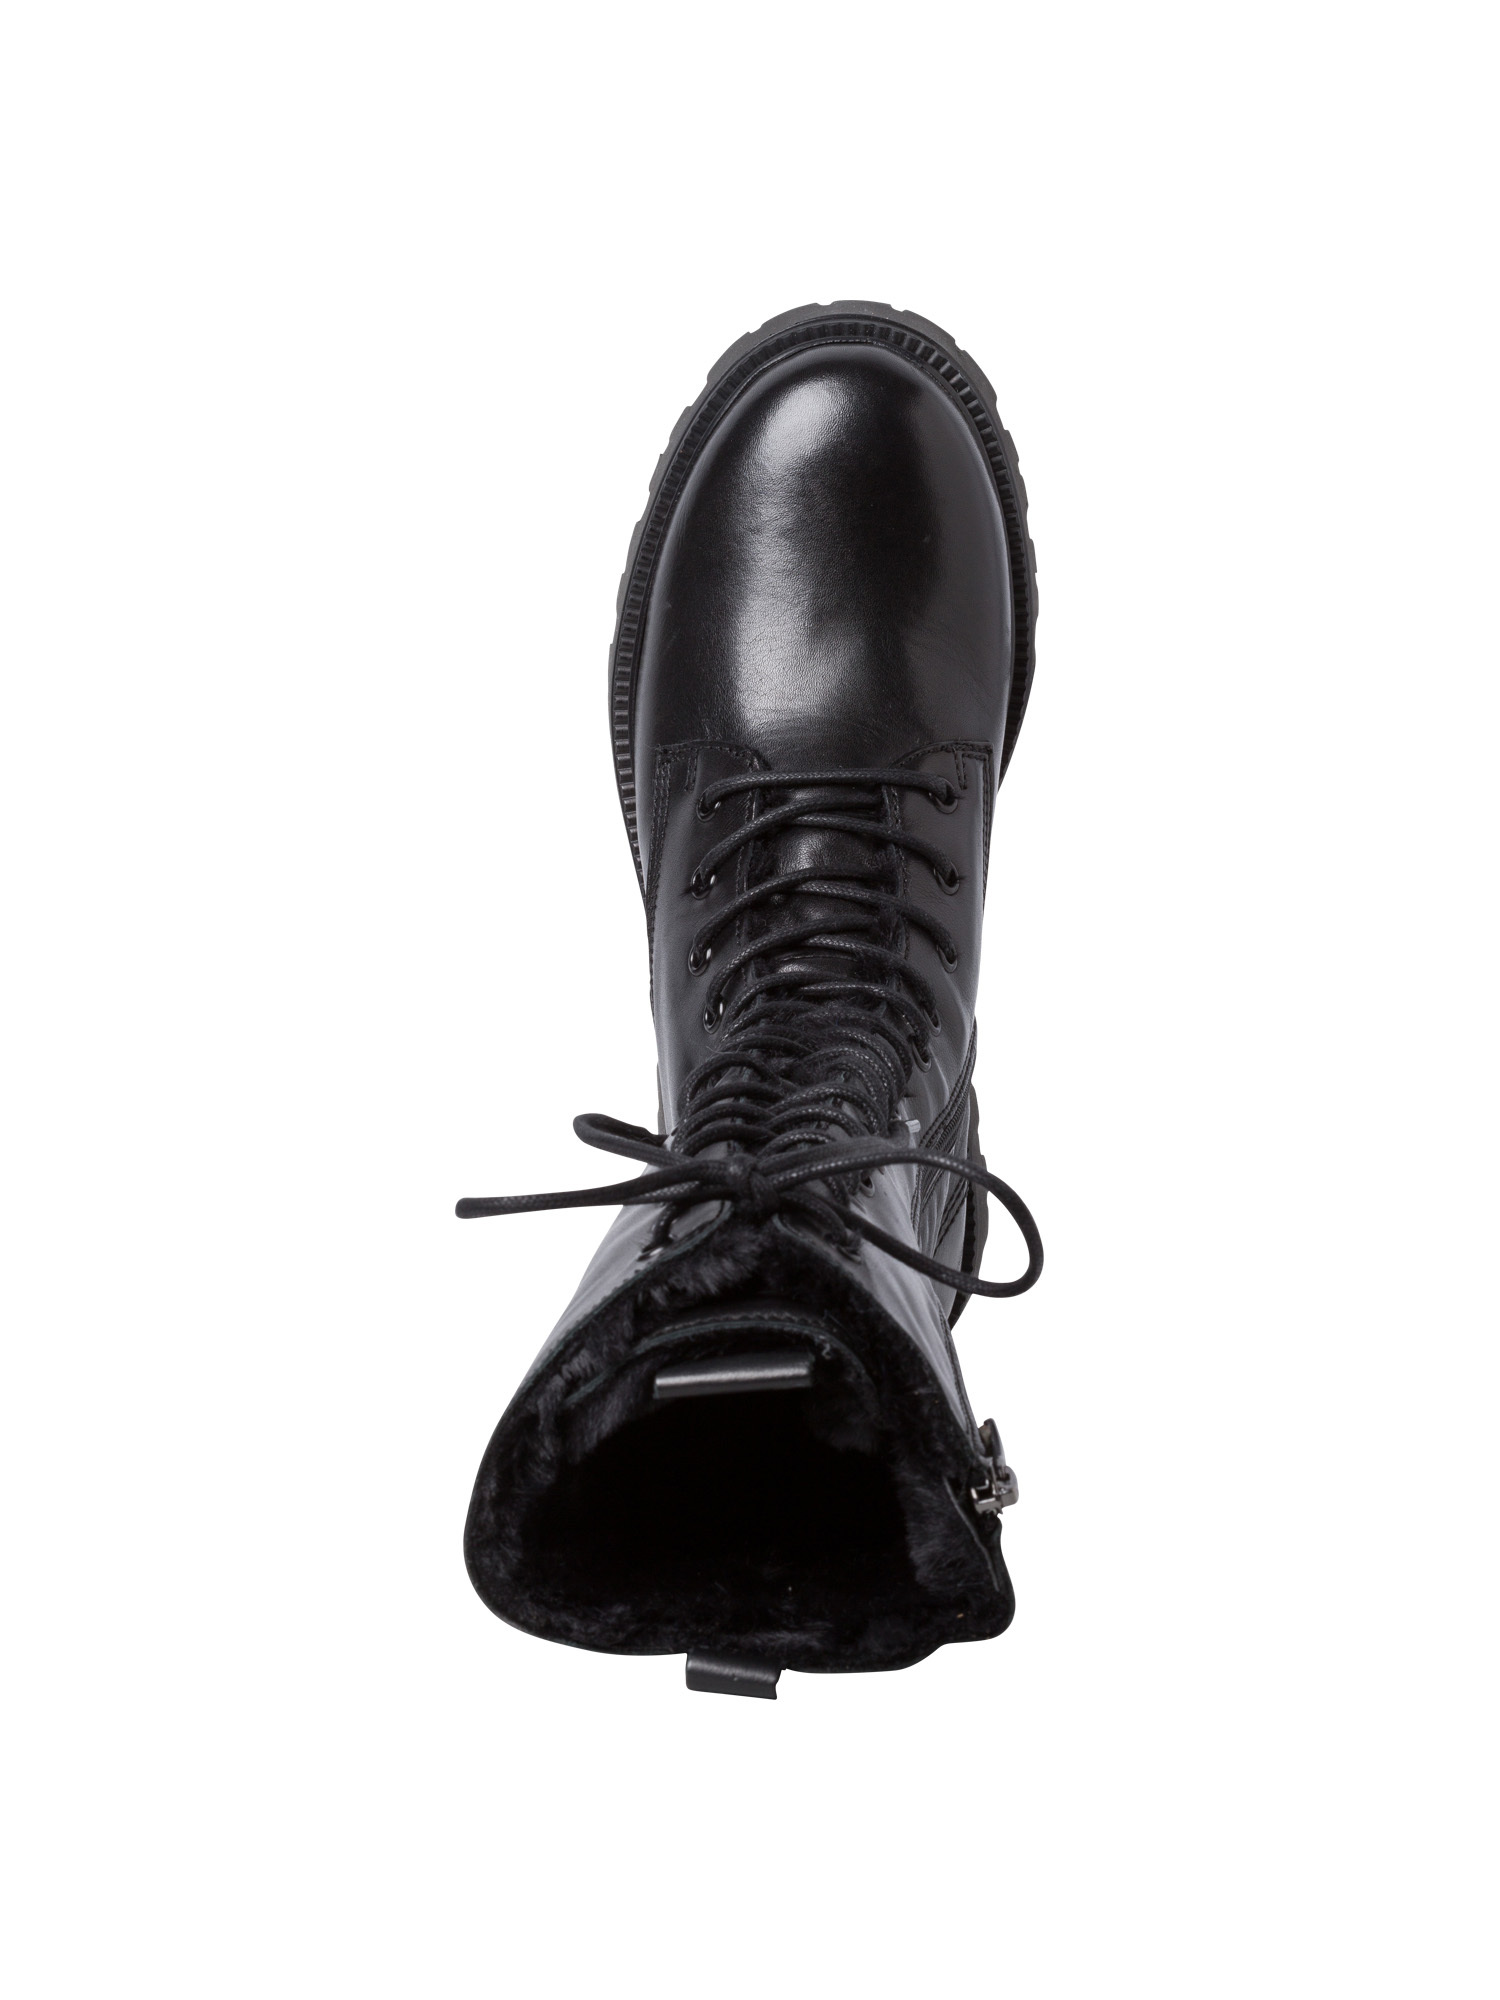 Buty vcCRO TAMARIS Kozaki sznurowane w kolorze Czarnym 